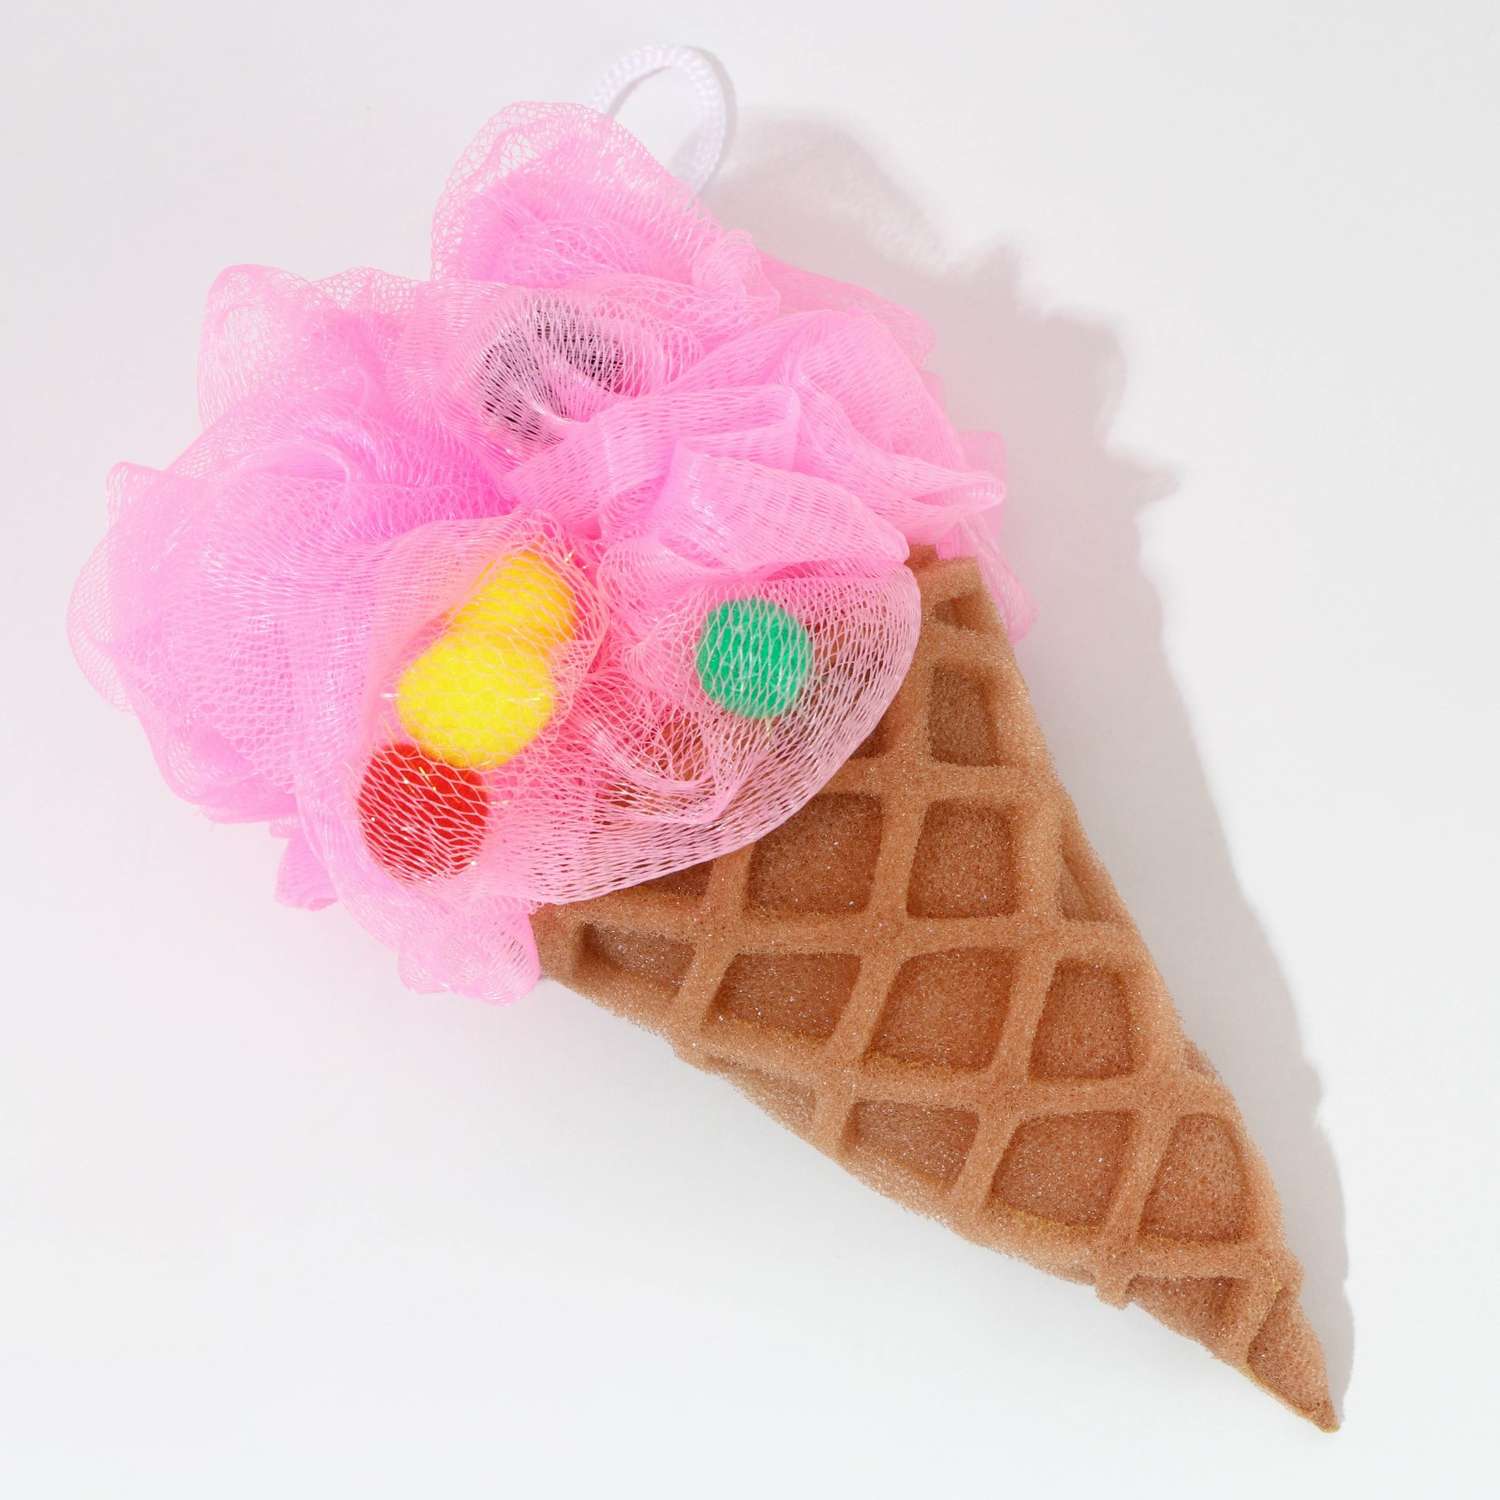 Подарочный набор Чистое счастье «Для тебя» гель для душа во флаконе шоколад и мочалка в форме мороженого - фото 4